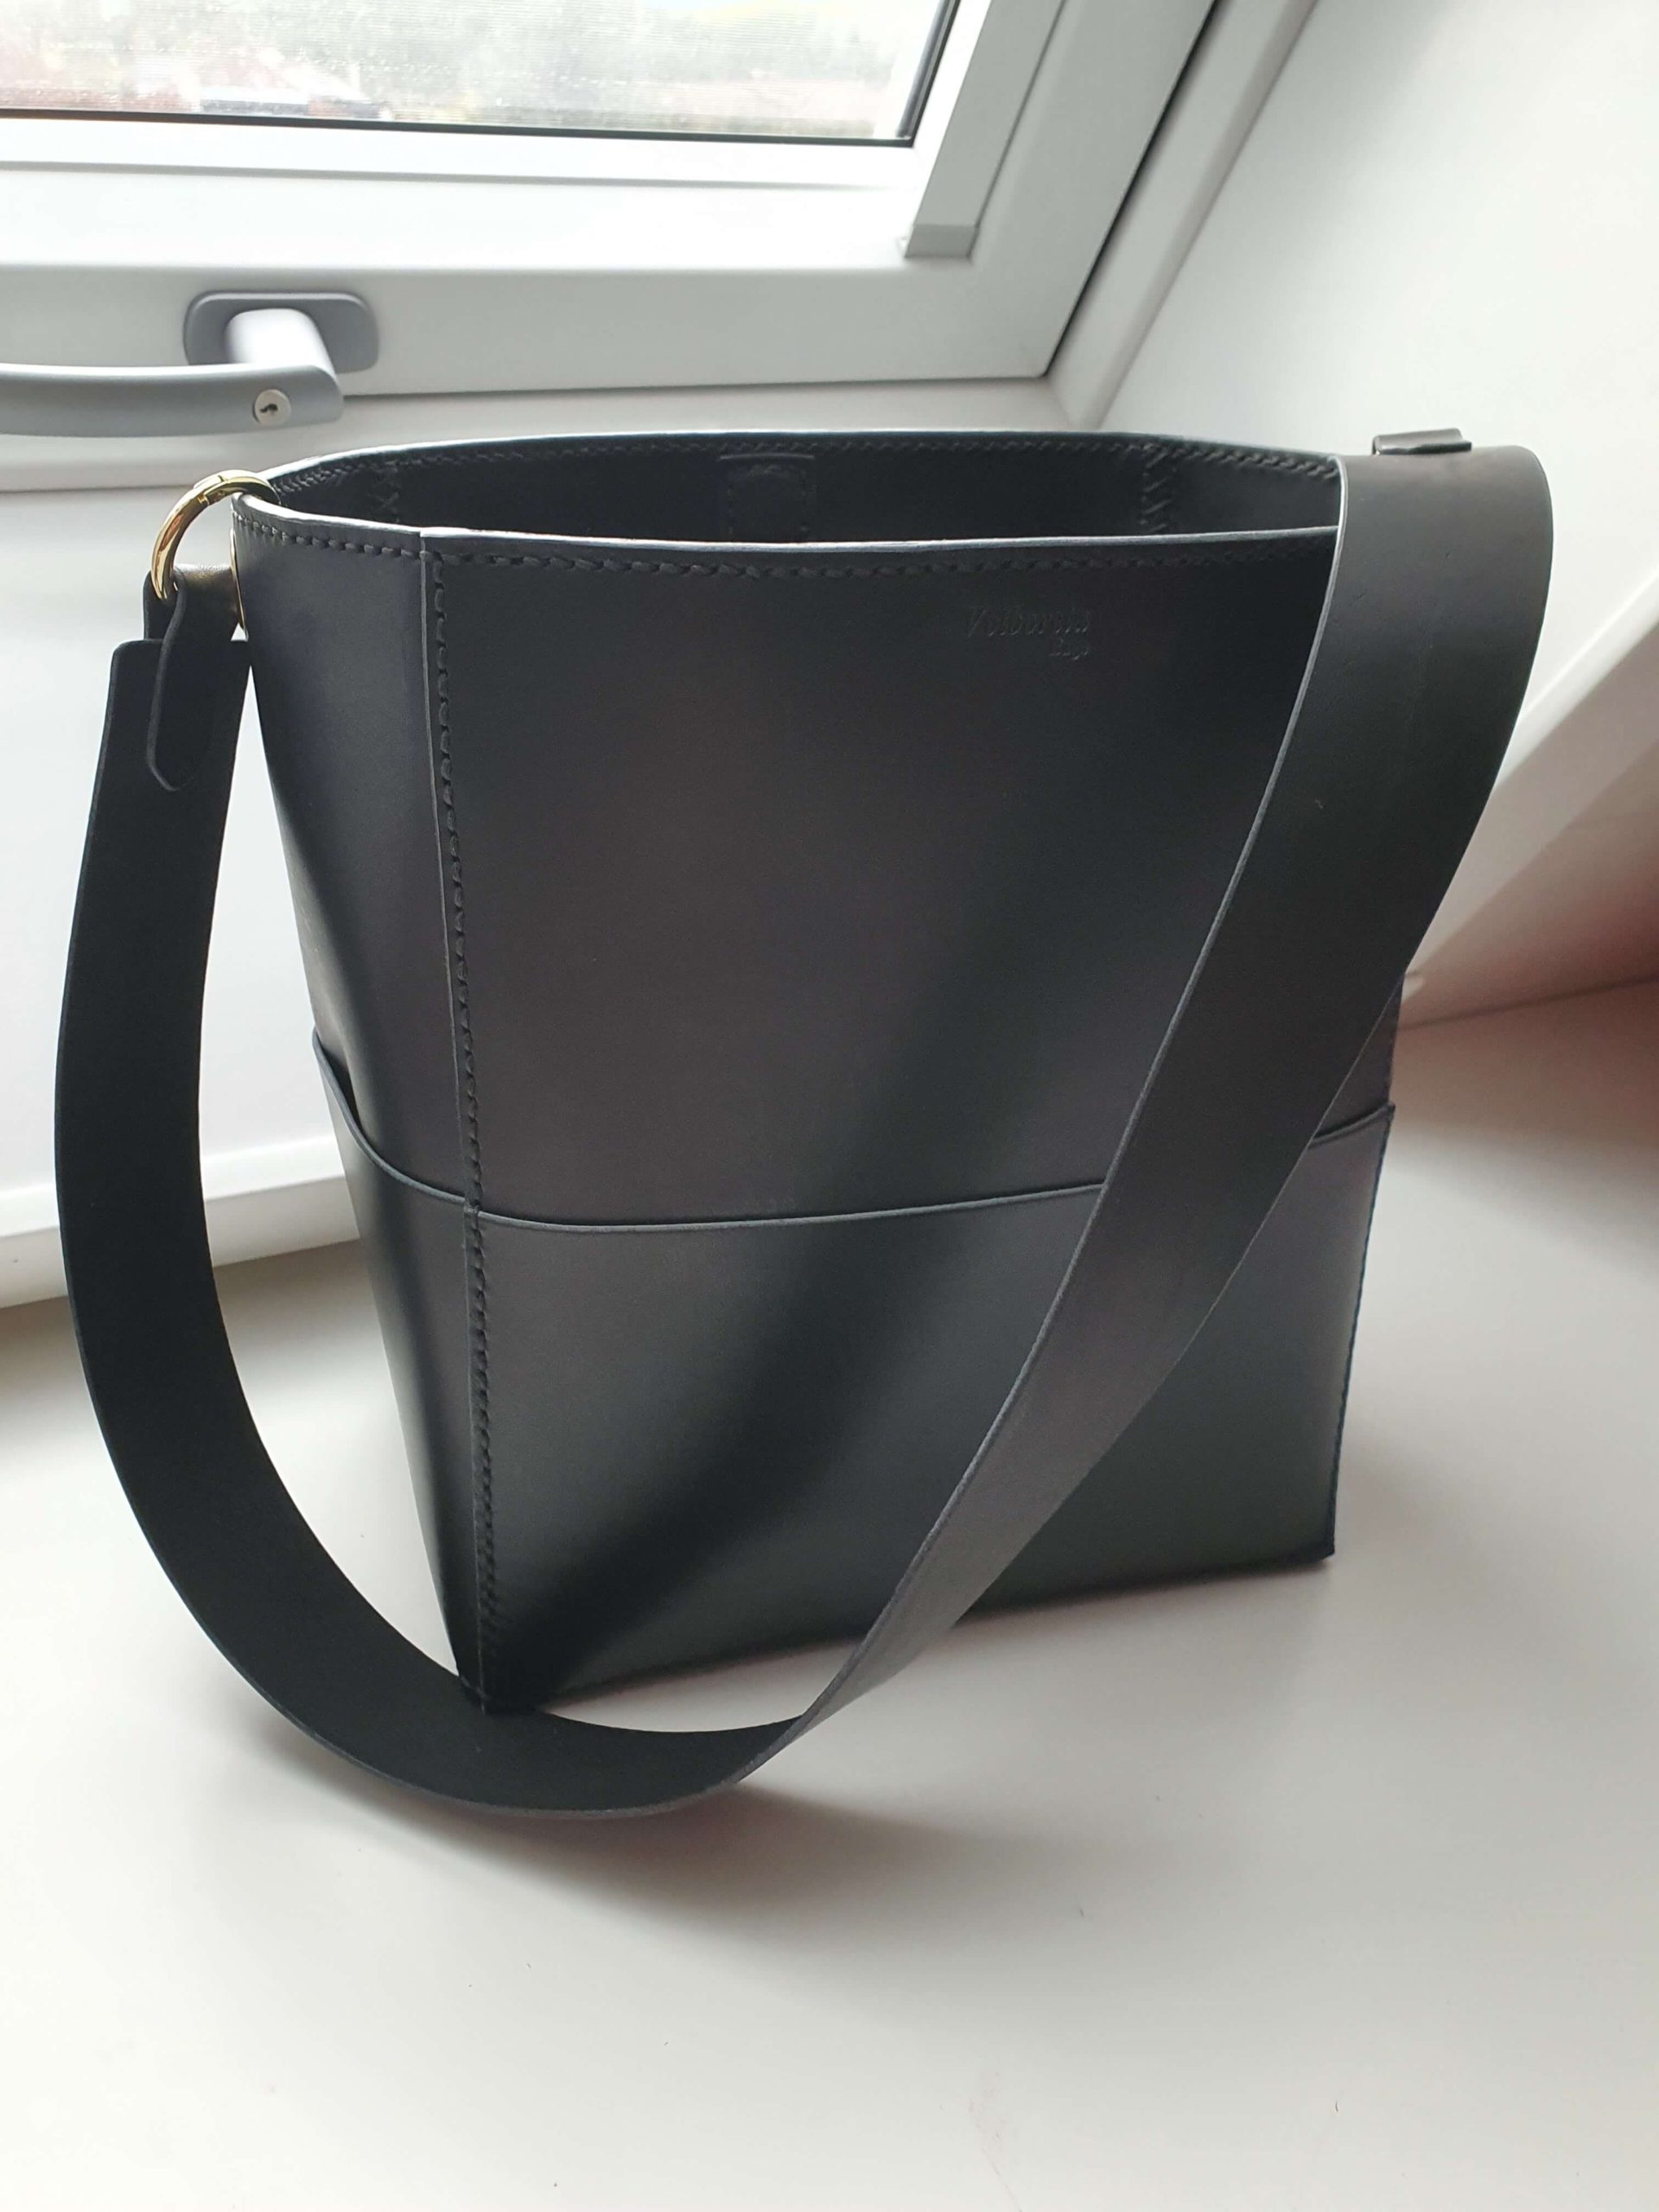 Velká kabelka s podšívkou - zákaznice se inspirovala v módním časopise